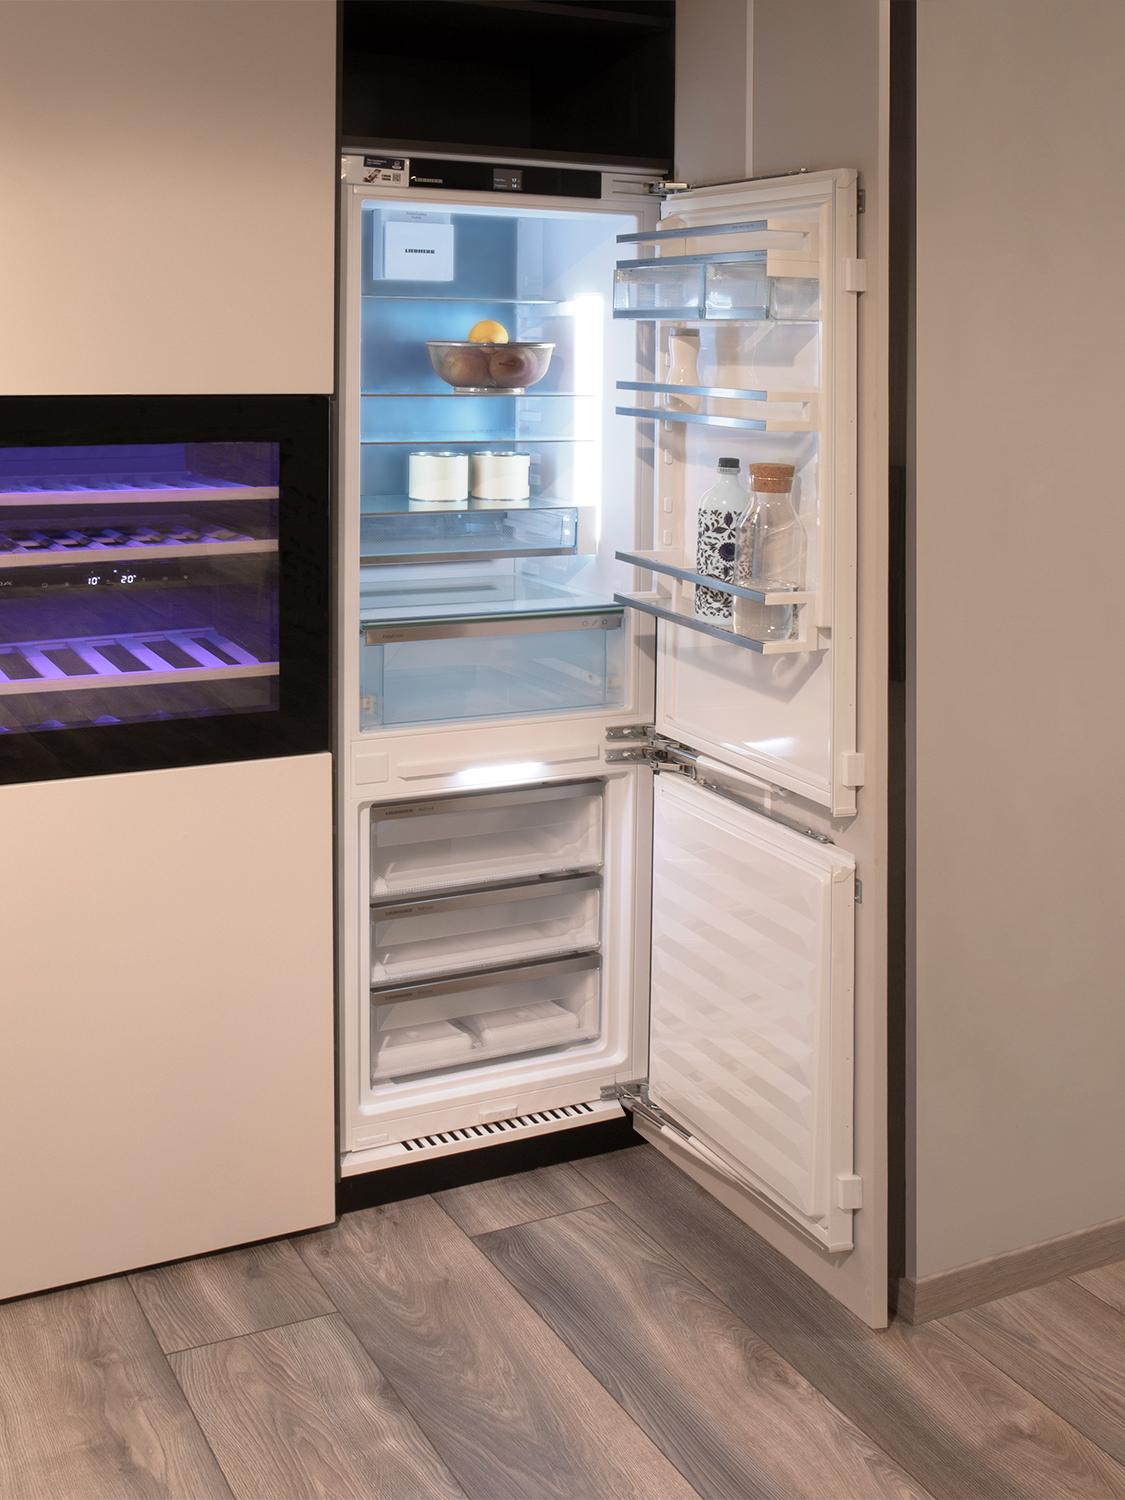 Cilento - Mobile cucina a scomparsa con piano 4 fuochi, frigo e lavabo in  106cm di altezza